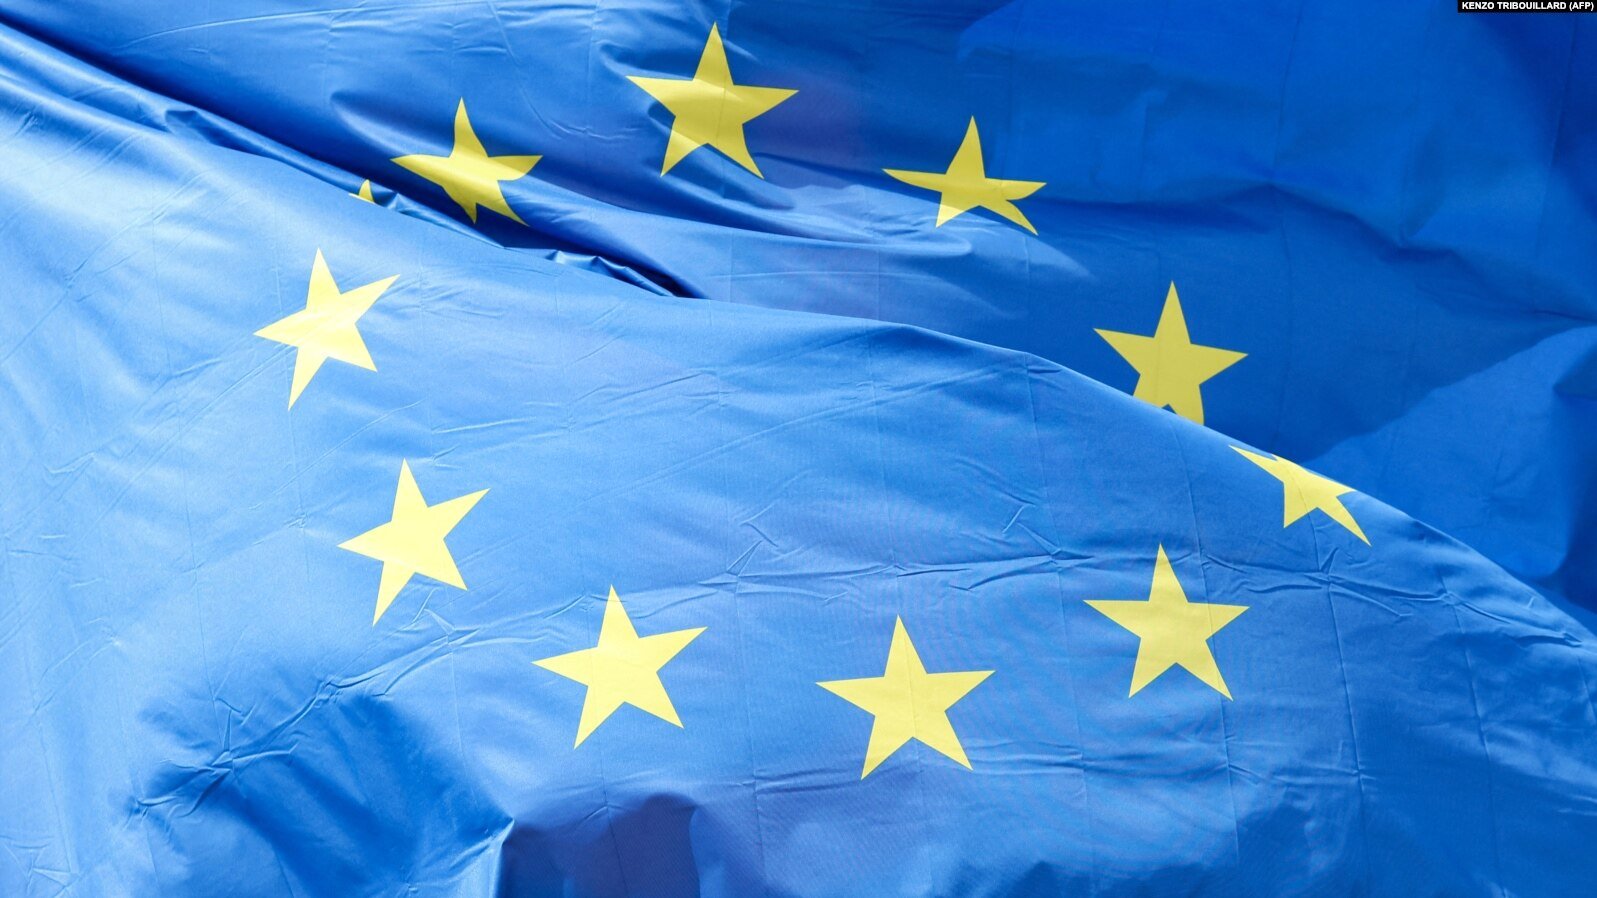 Վրաստանում կսահմանվի տուգանք ԵՄ դրոշը վնասելու համար